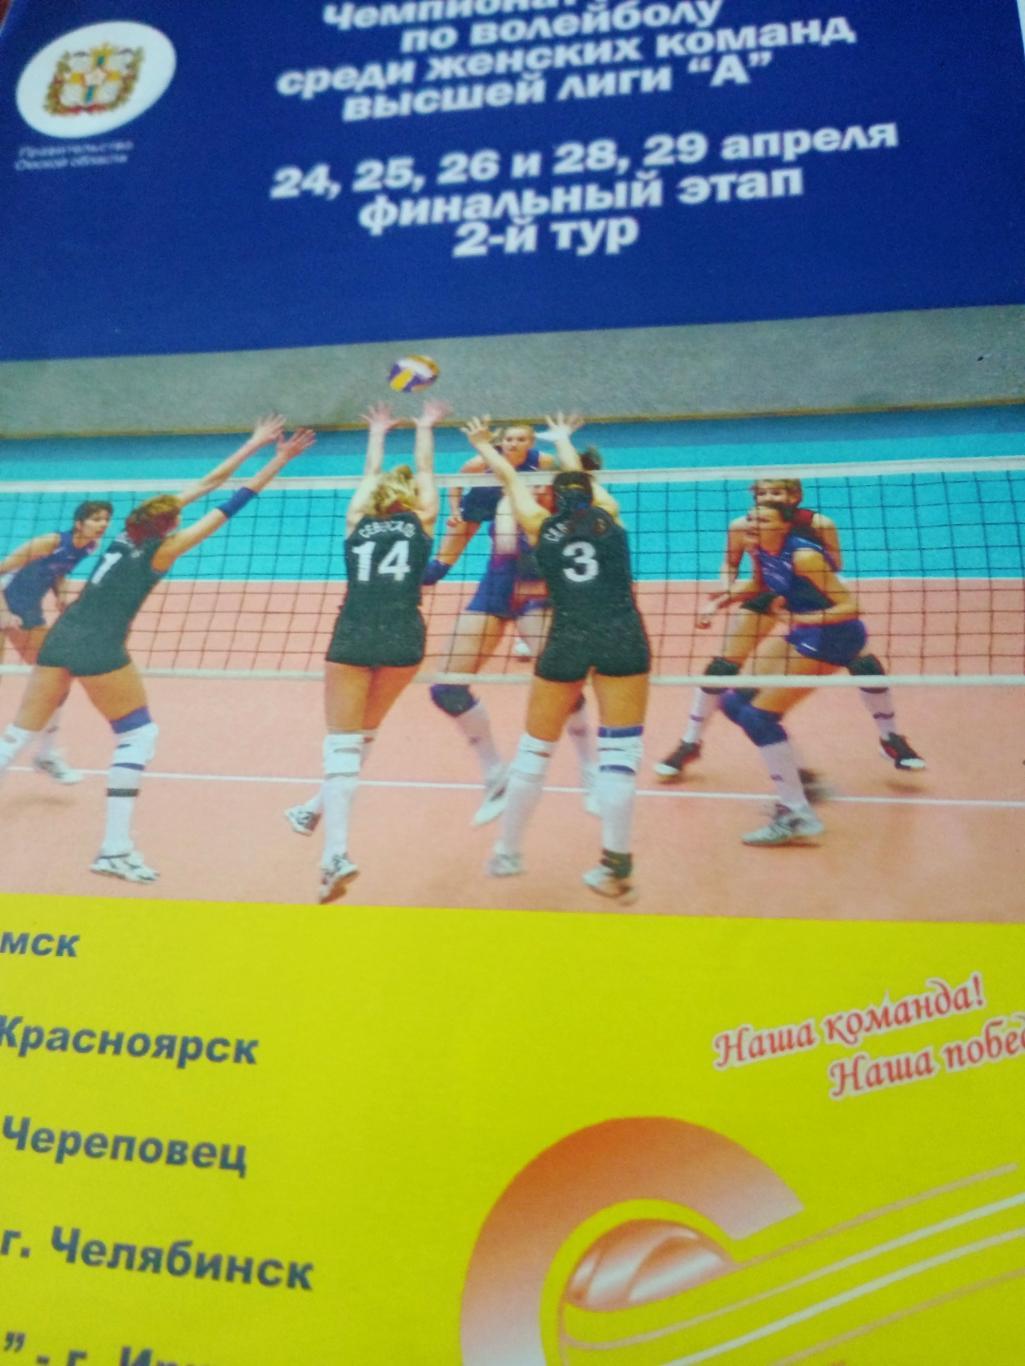 Финальный этап. Высшая лига А. 2006 год. Тур в Омске (24-29 апреля)